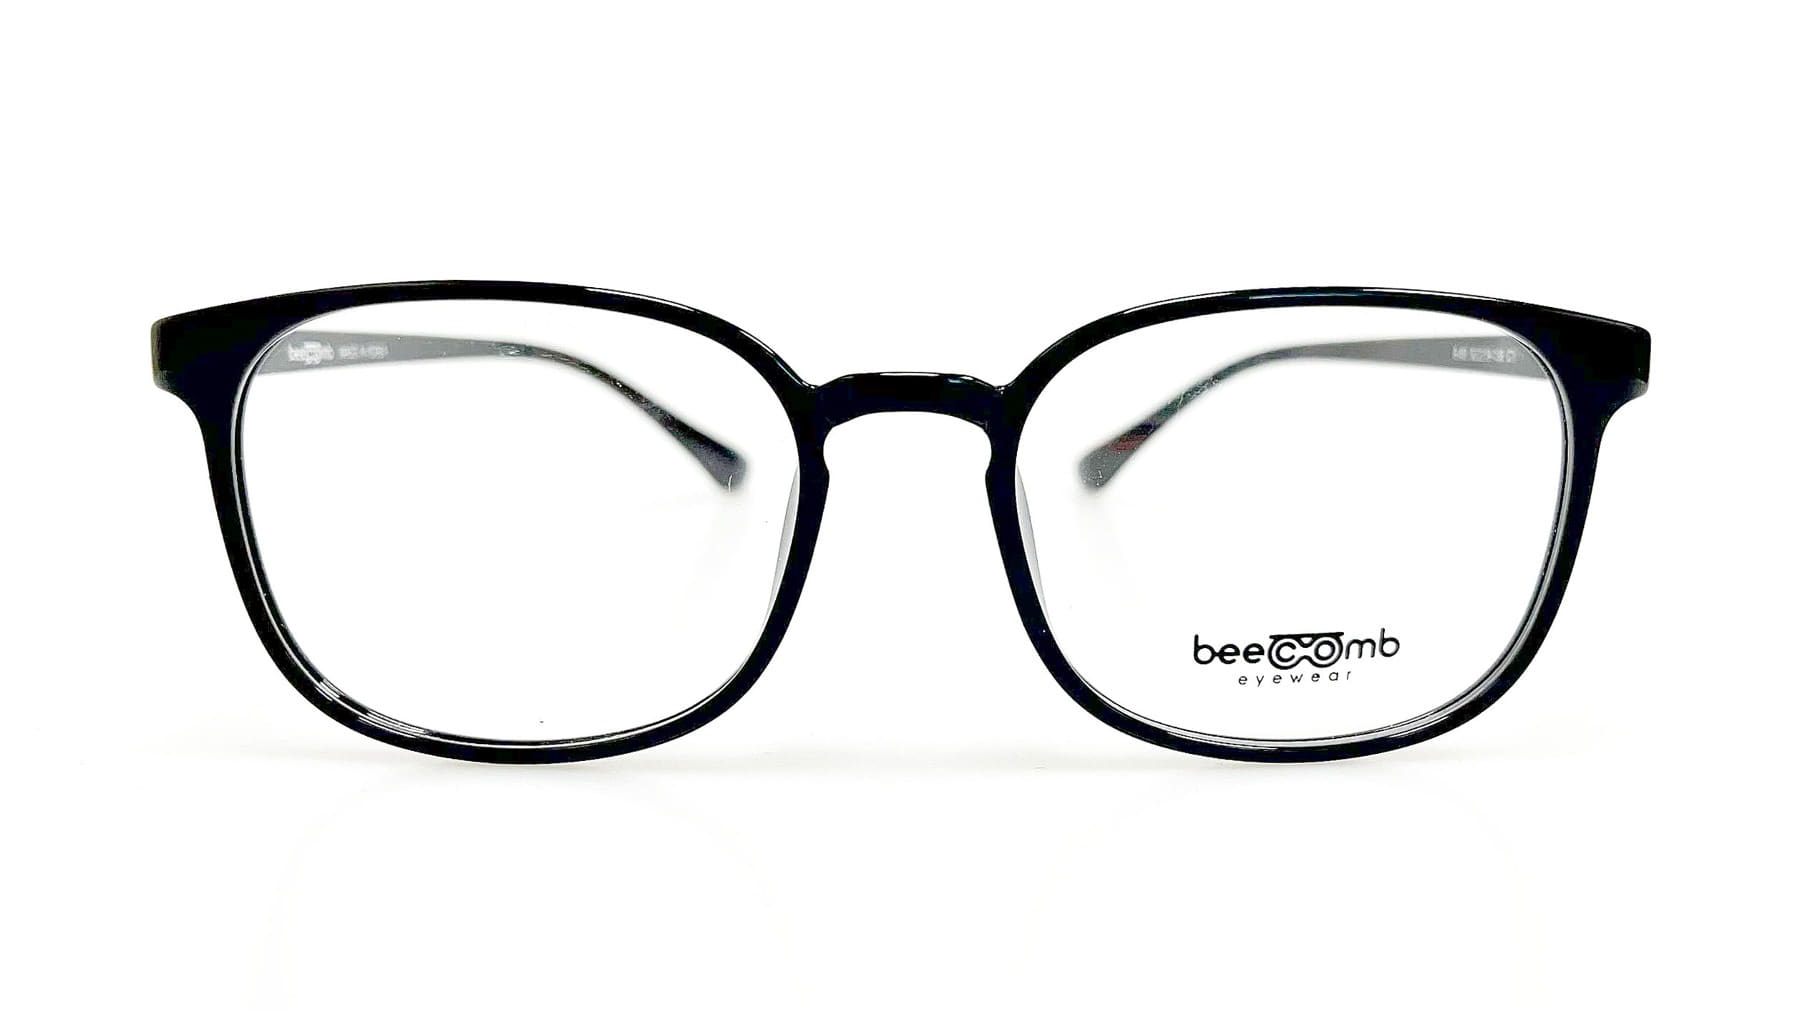 B-83, Korean glasses, sunglasses, eyeglasses, glasses